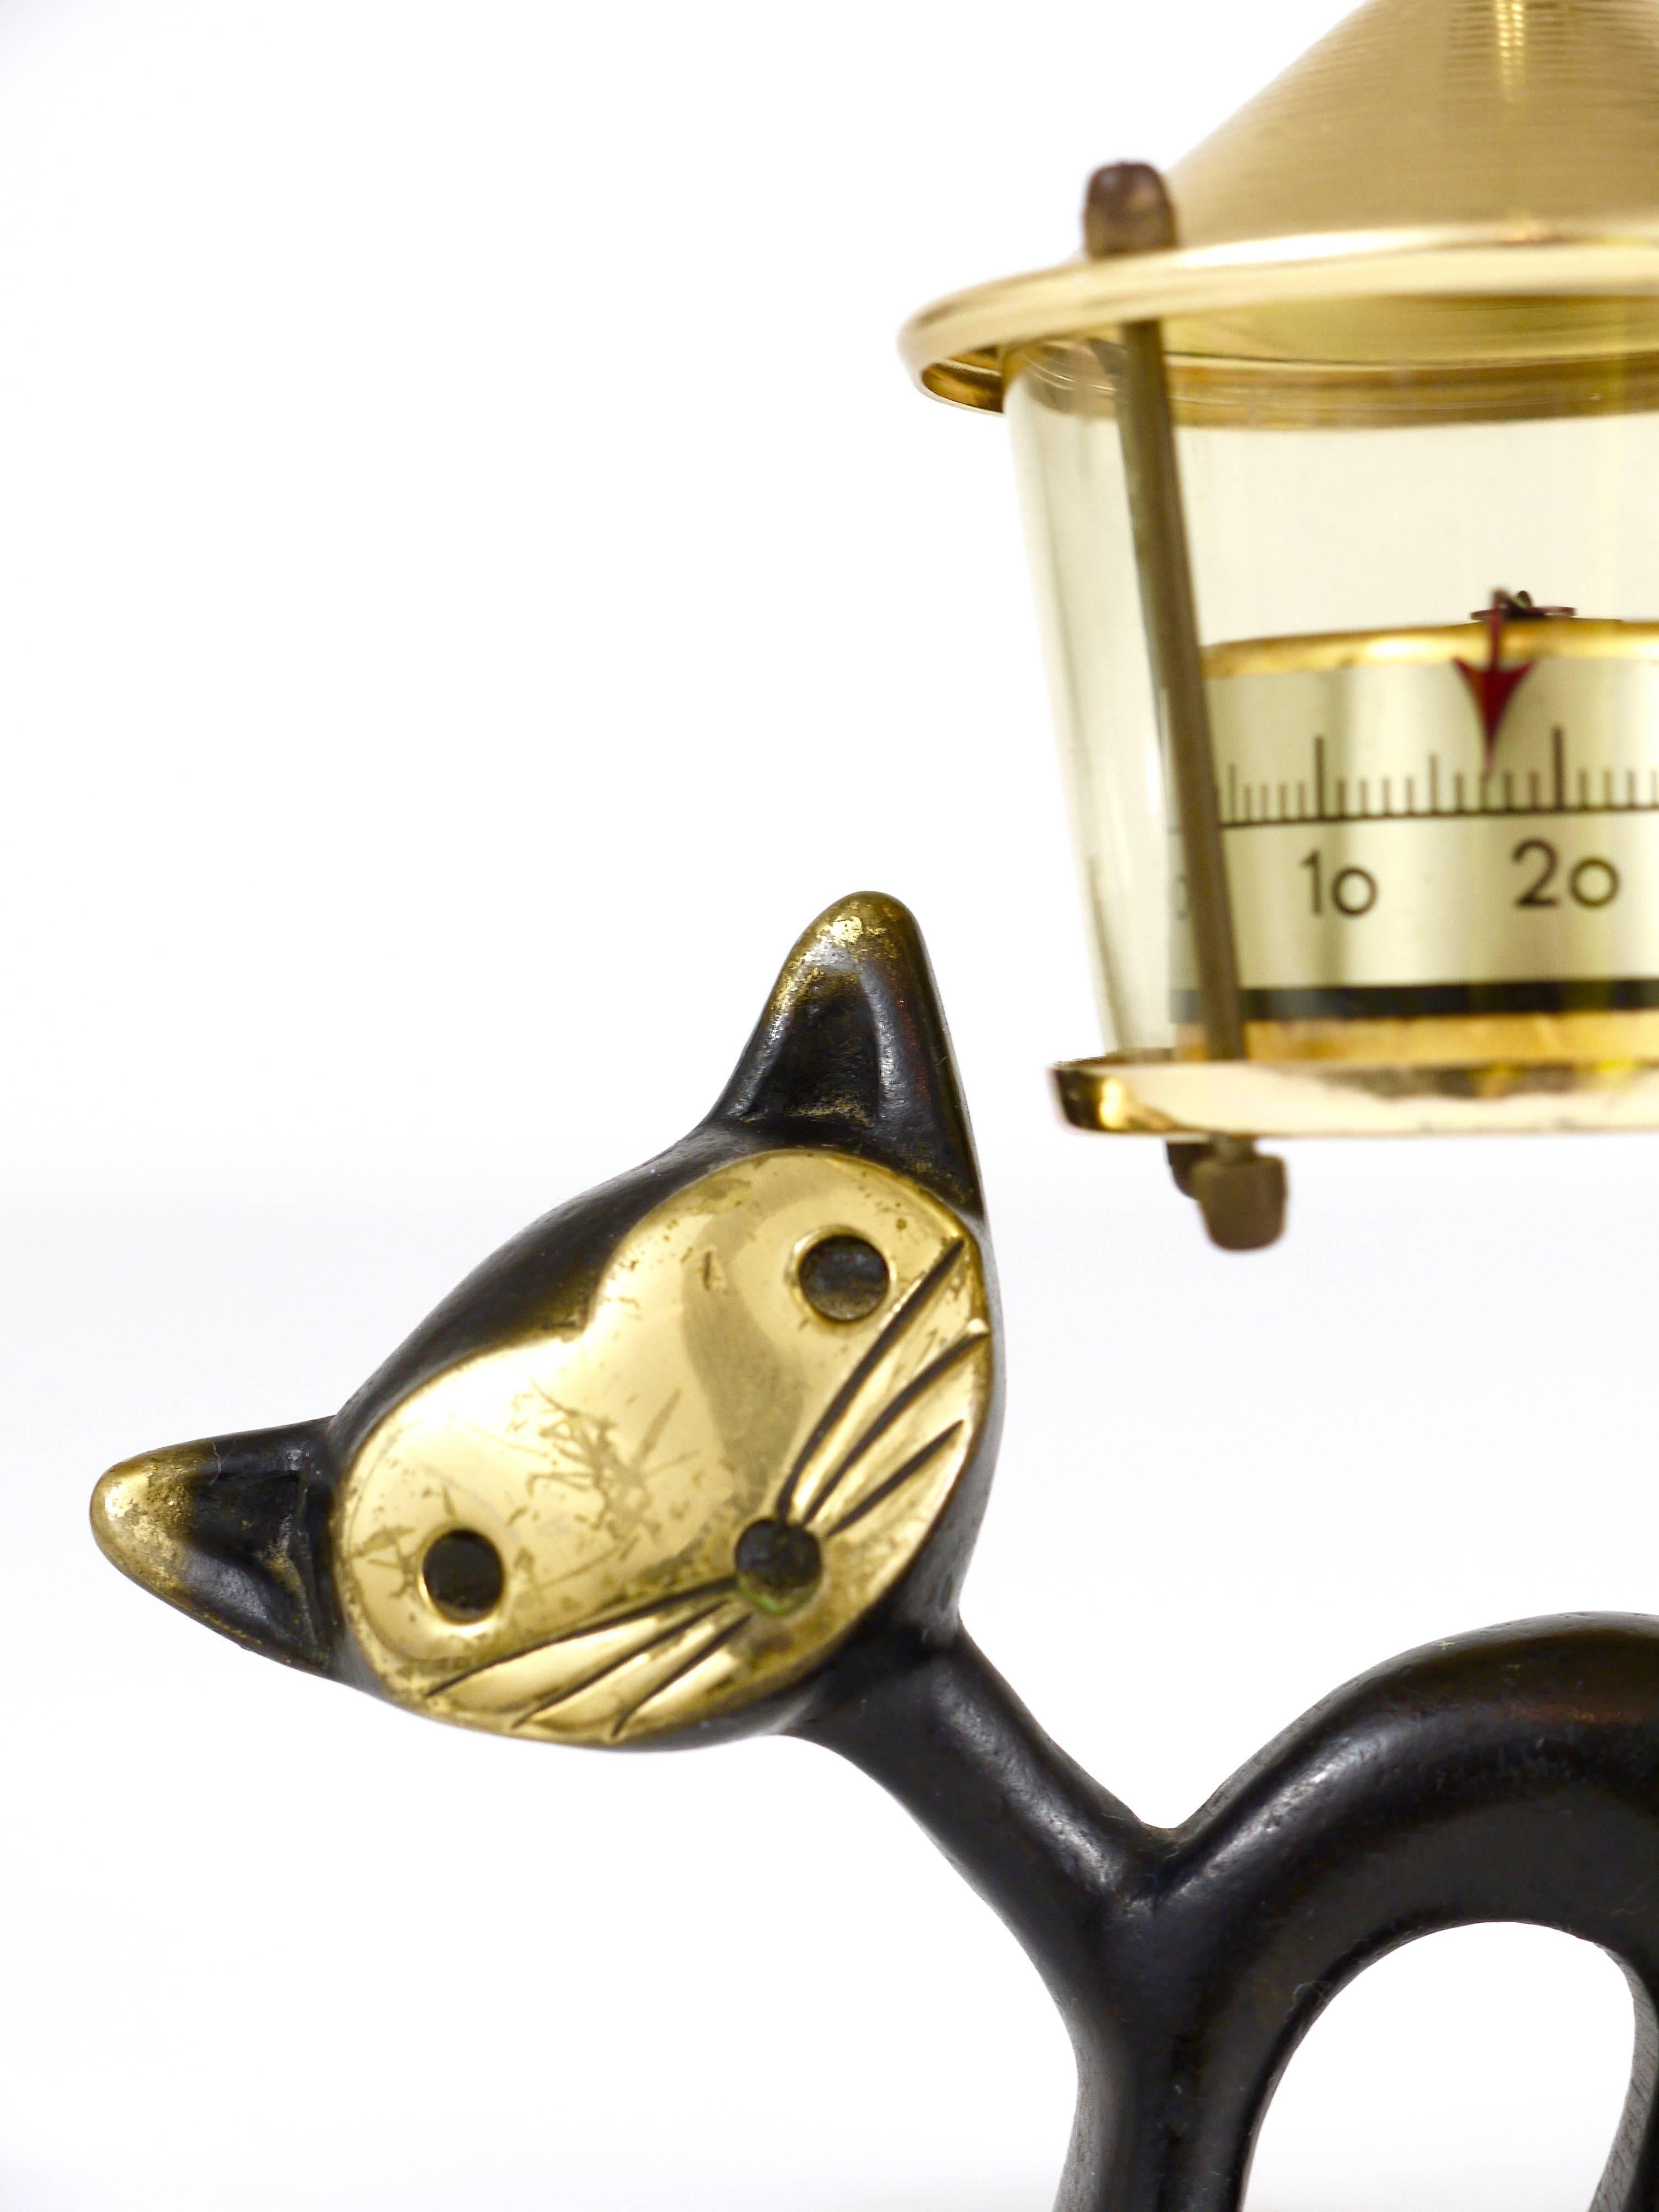 Charmant thermomètre de bureau autrichien moderne du milieu du siècle, composé d'une jolie figurine de chat et d'un thermomètre en forme de lanterne. Un design humoristique de Walter Bosse, exécuté par Hertha Baller Austria dans les années 1950. En